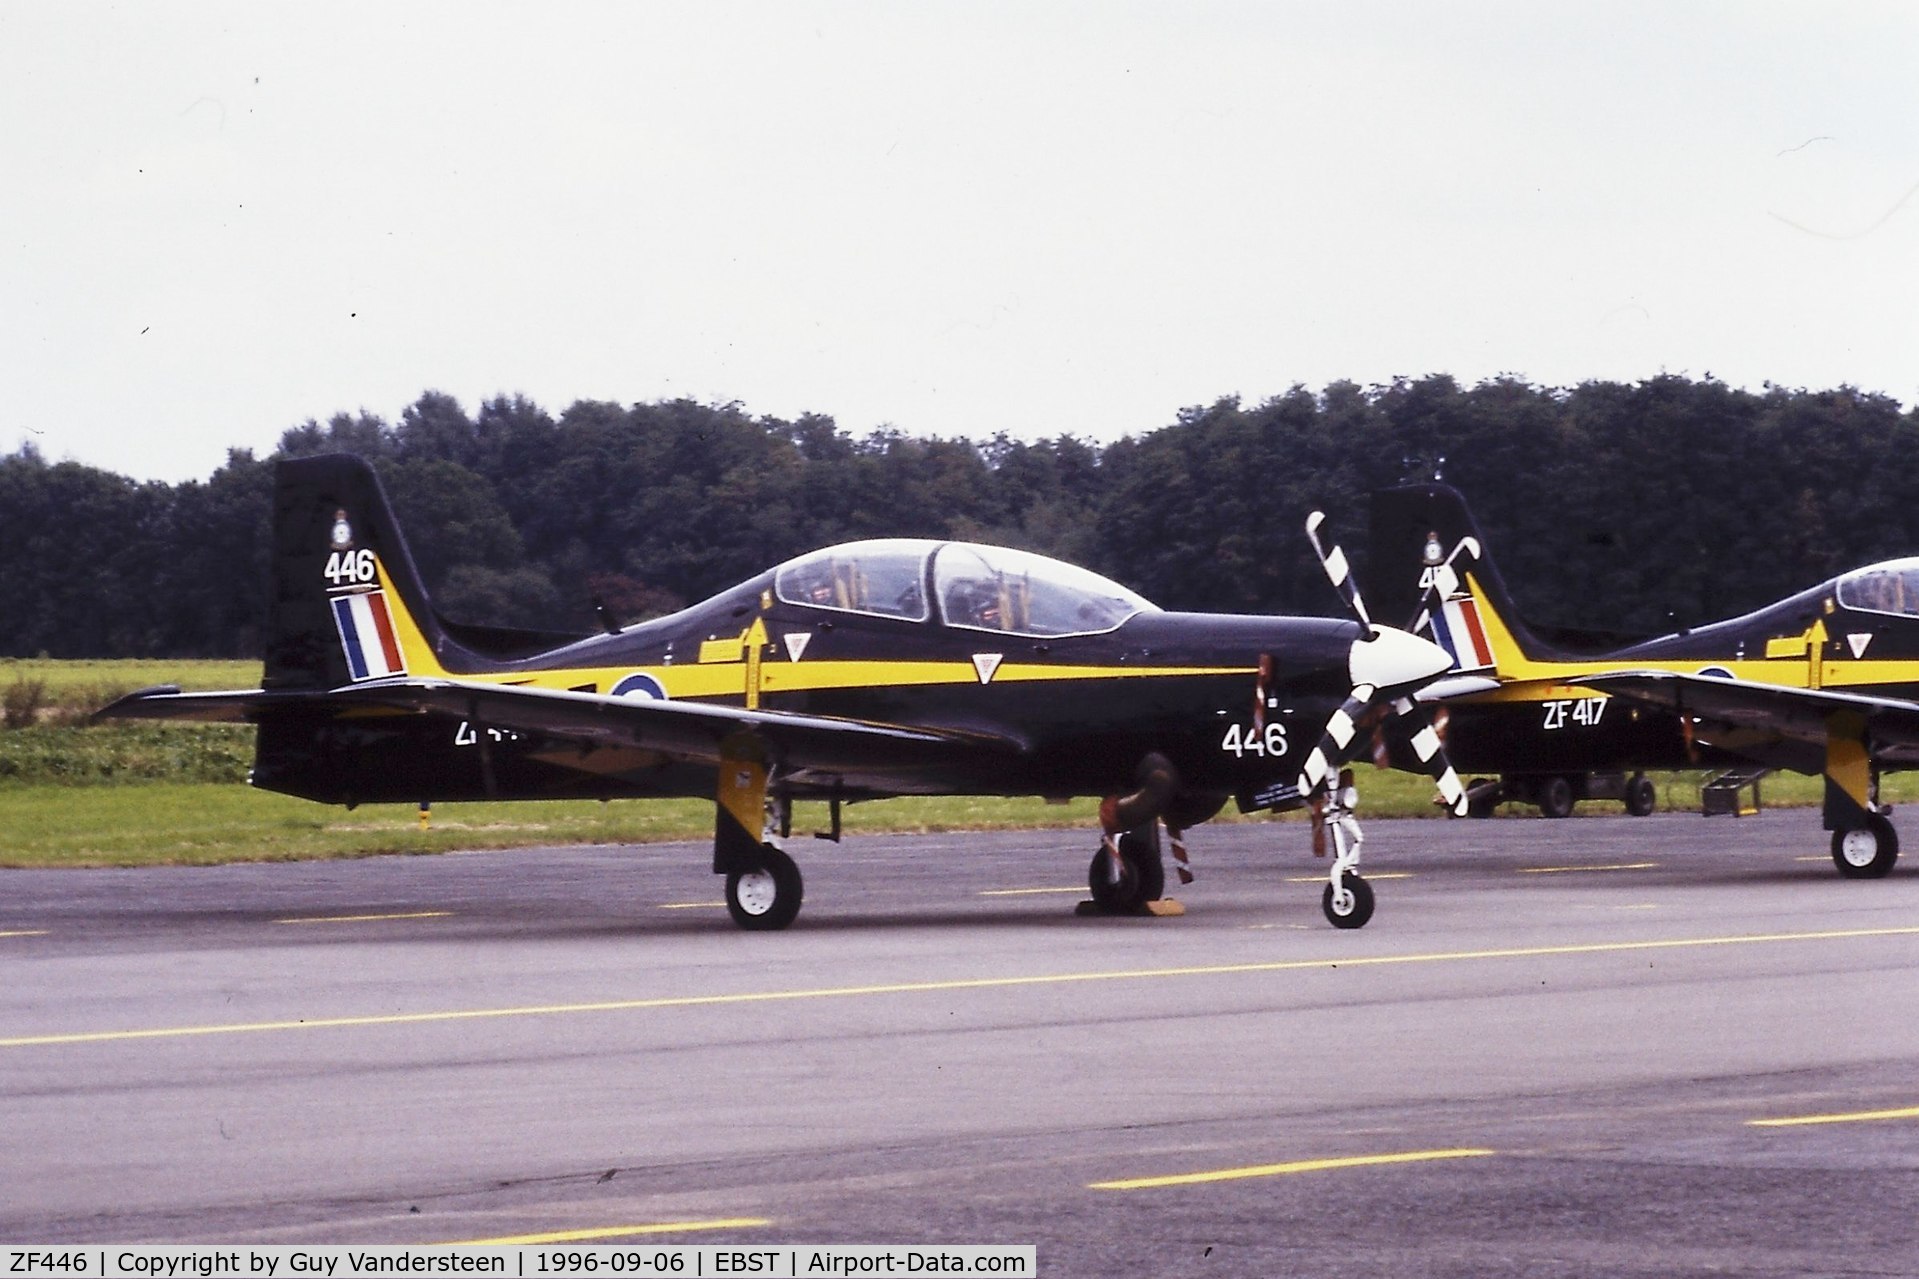 ZF446, 1992 Short S-312 Tucano T1 C/N S139/T110, Brustem airshow 1996